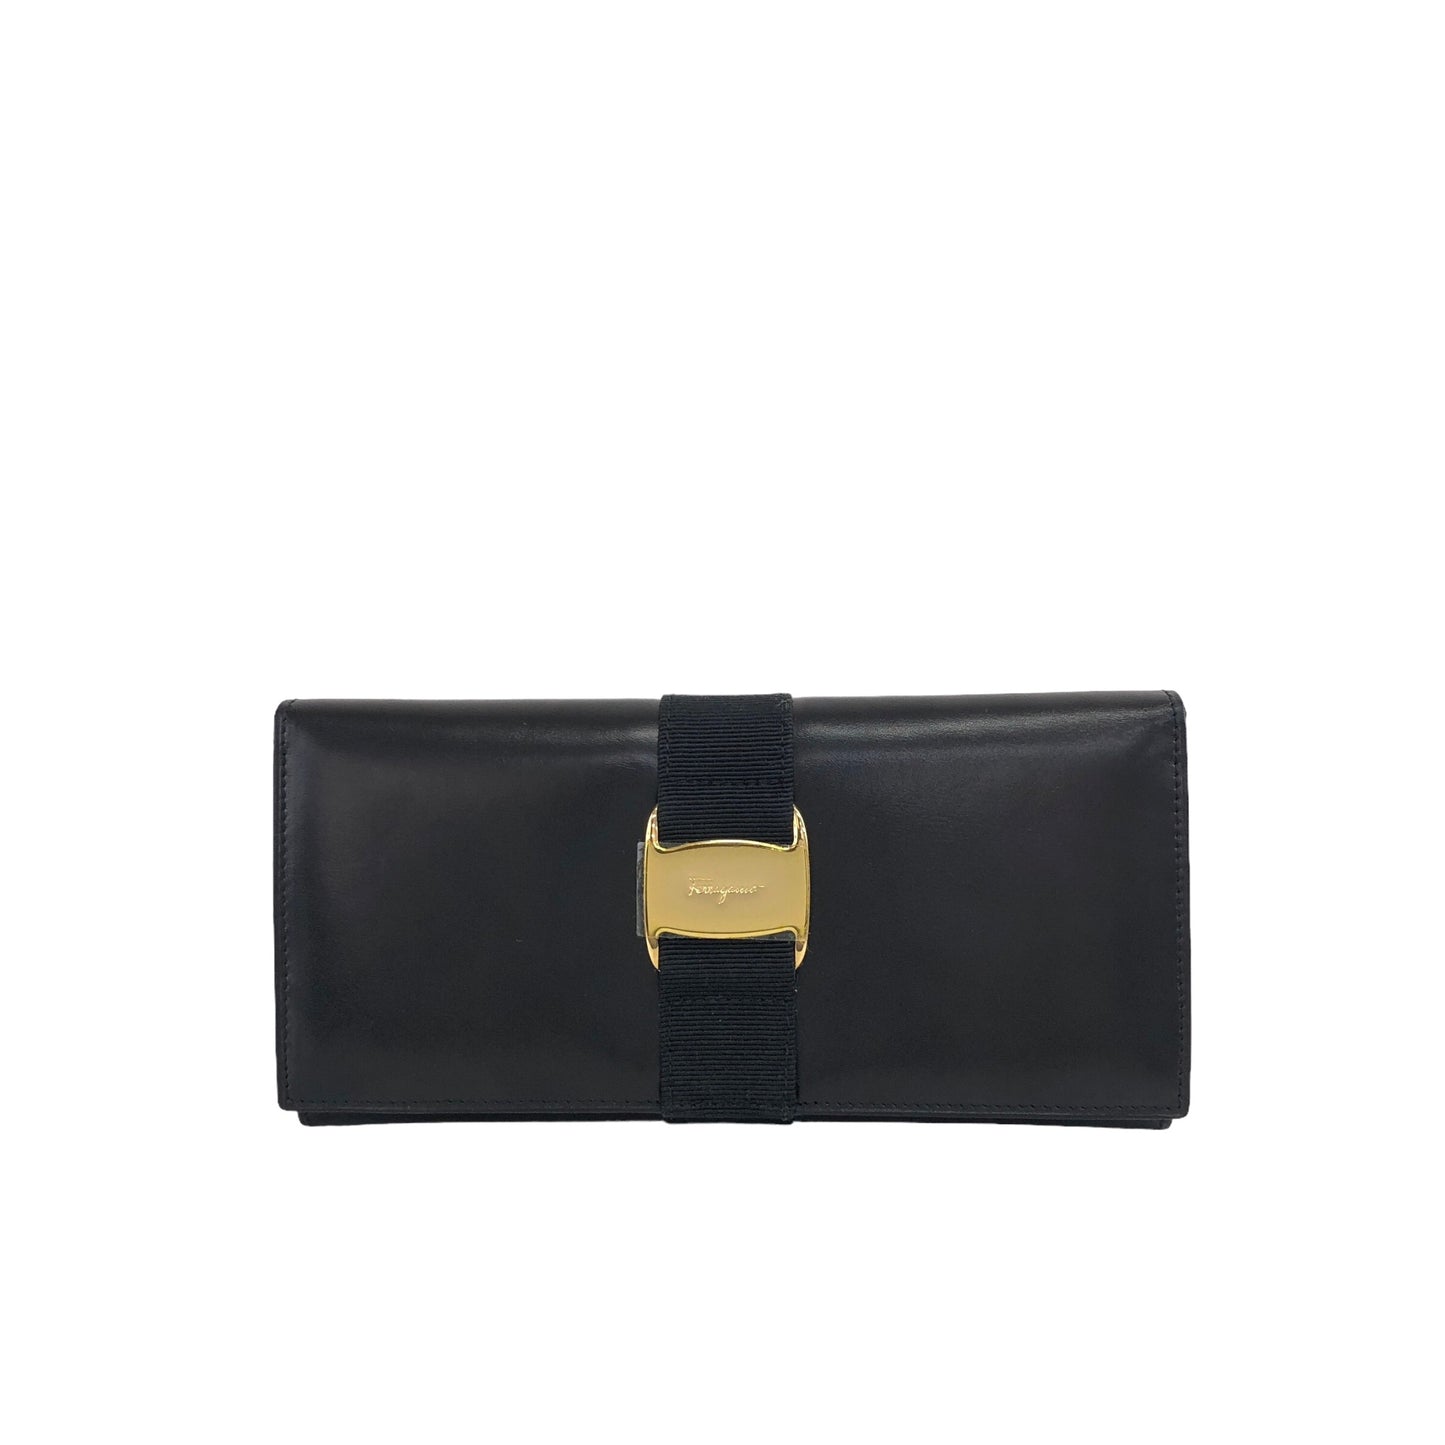 Salvatore Ferragamo Vala Leather Long Wallet Black Vintage gvd2y7